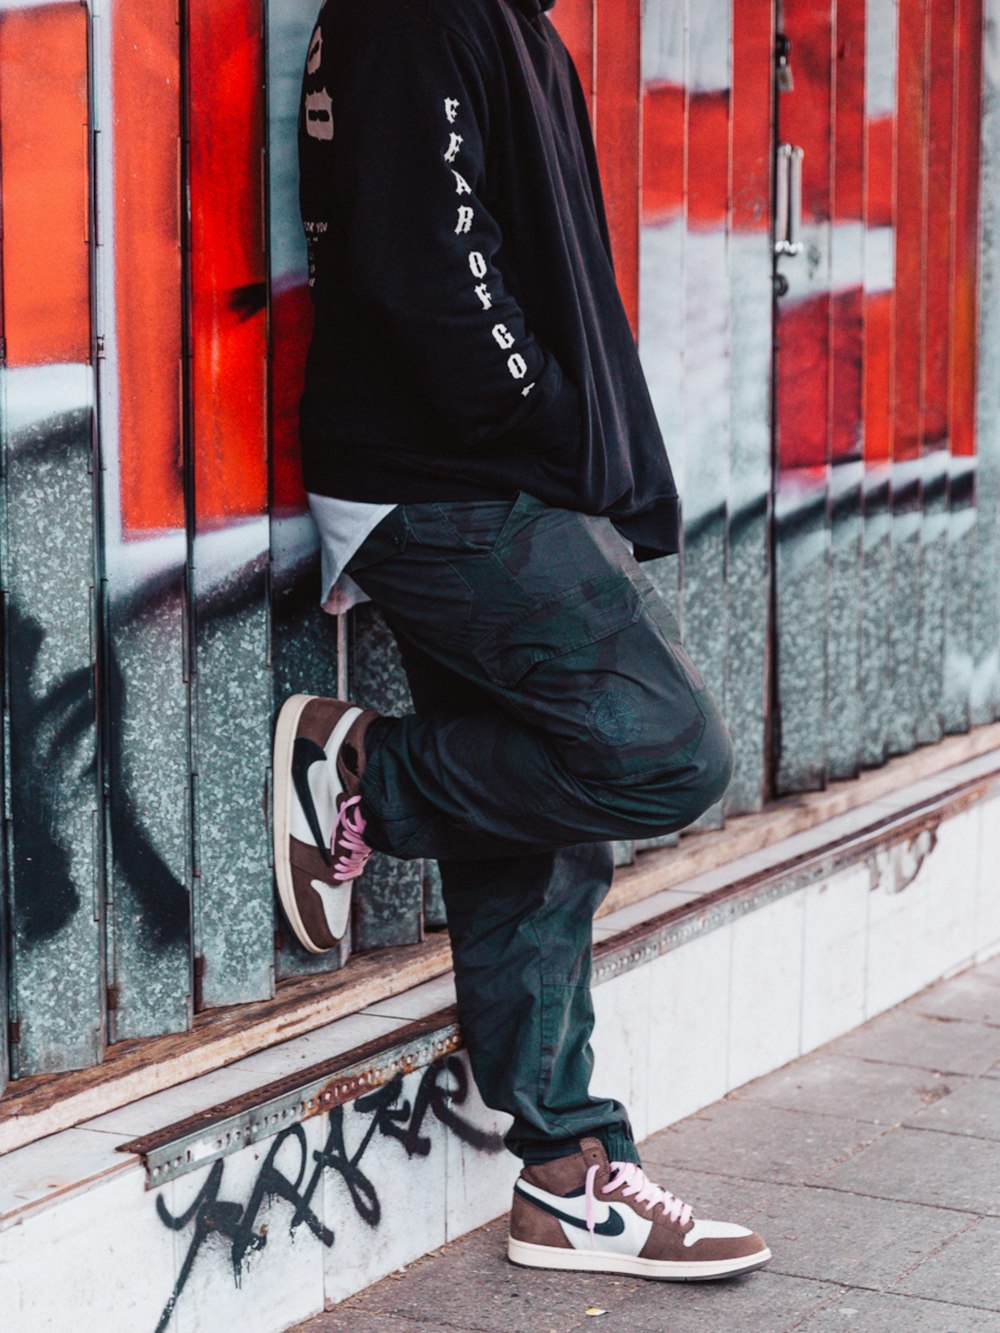 homme en chaussures de basket nike noir et blanc et pantalon noir photo –  Photo Vancouver Gratuite sur Unsplash